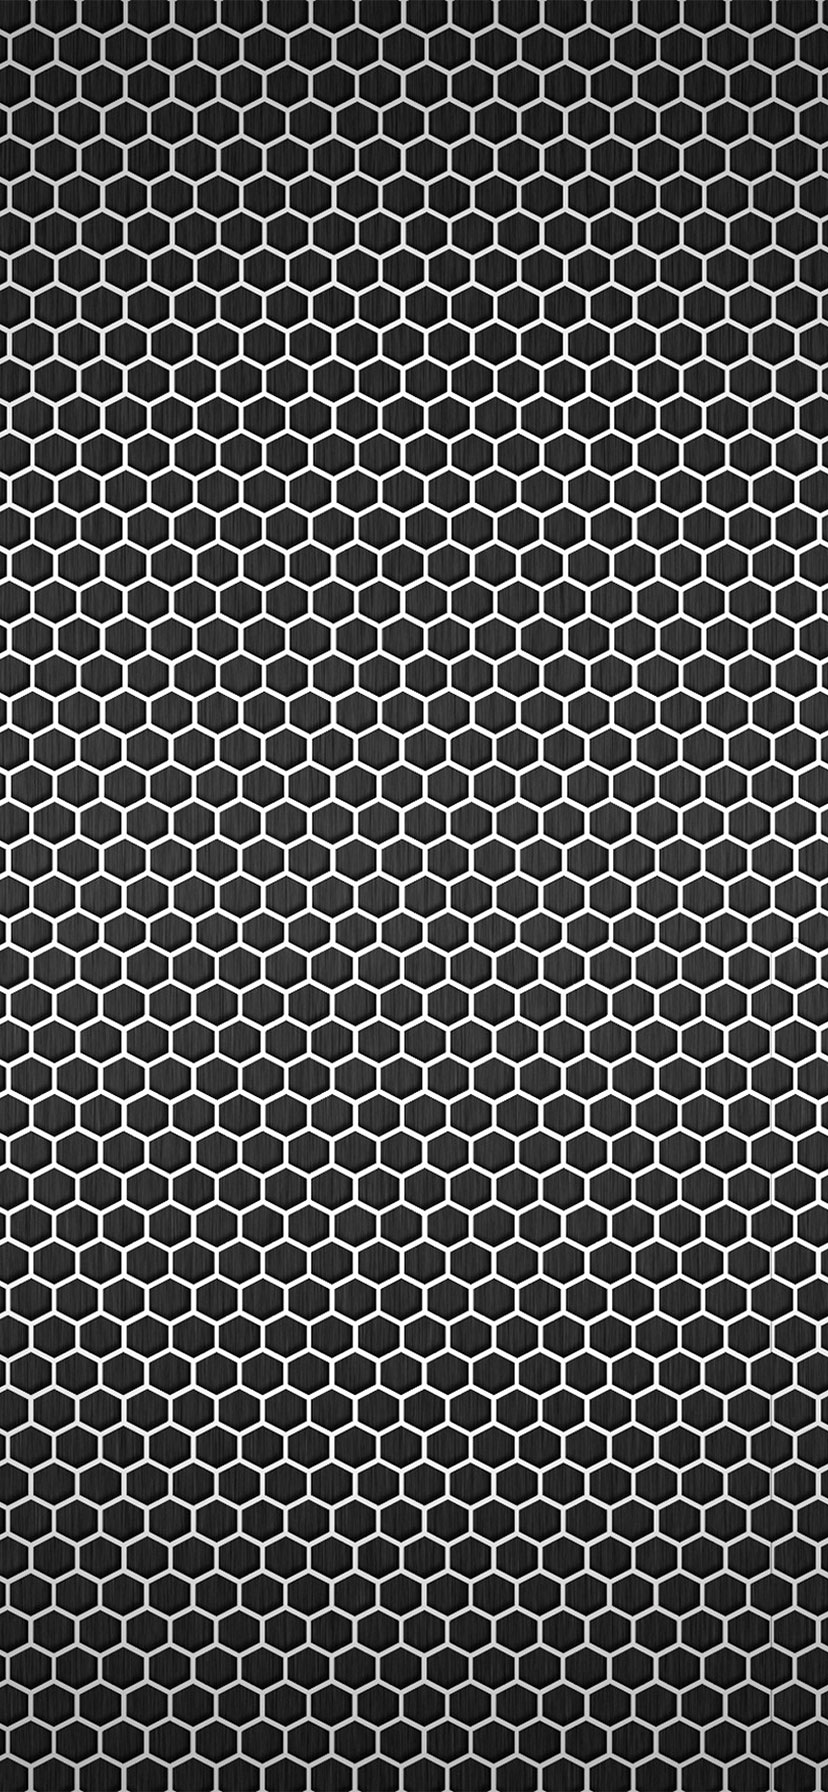 Carbon Fiber Carbon Fibre Texture - 828x1792 Wallpaper 